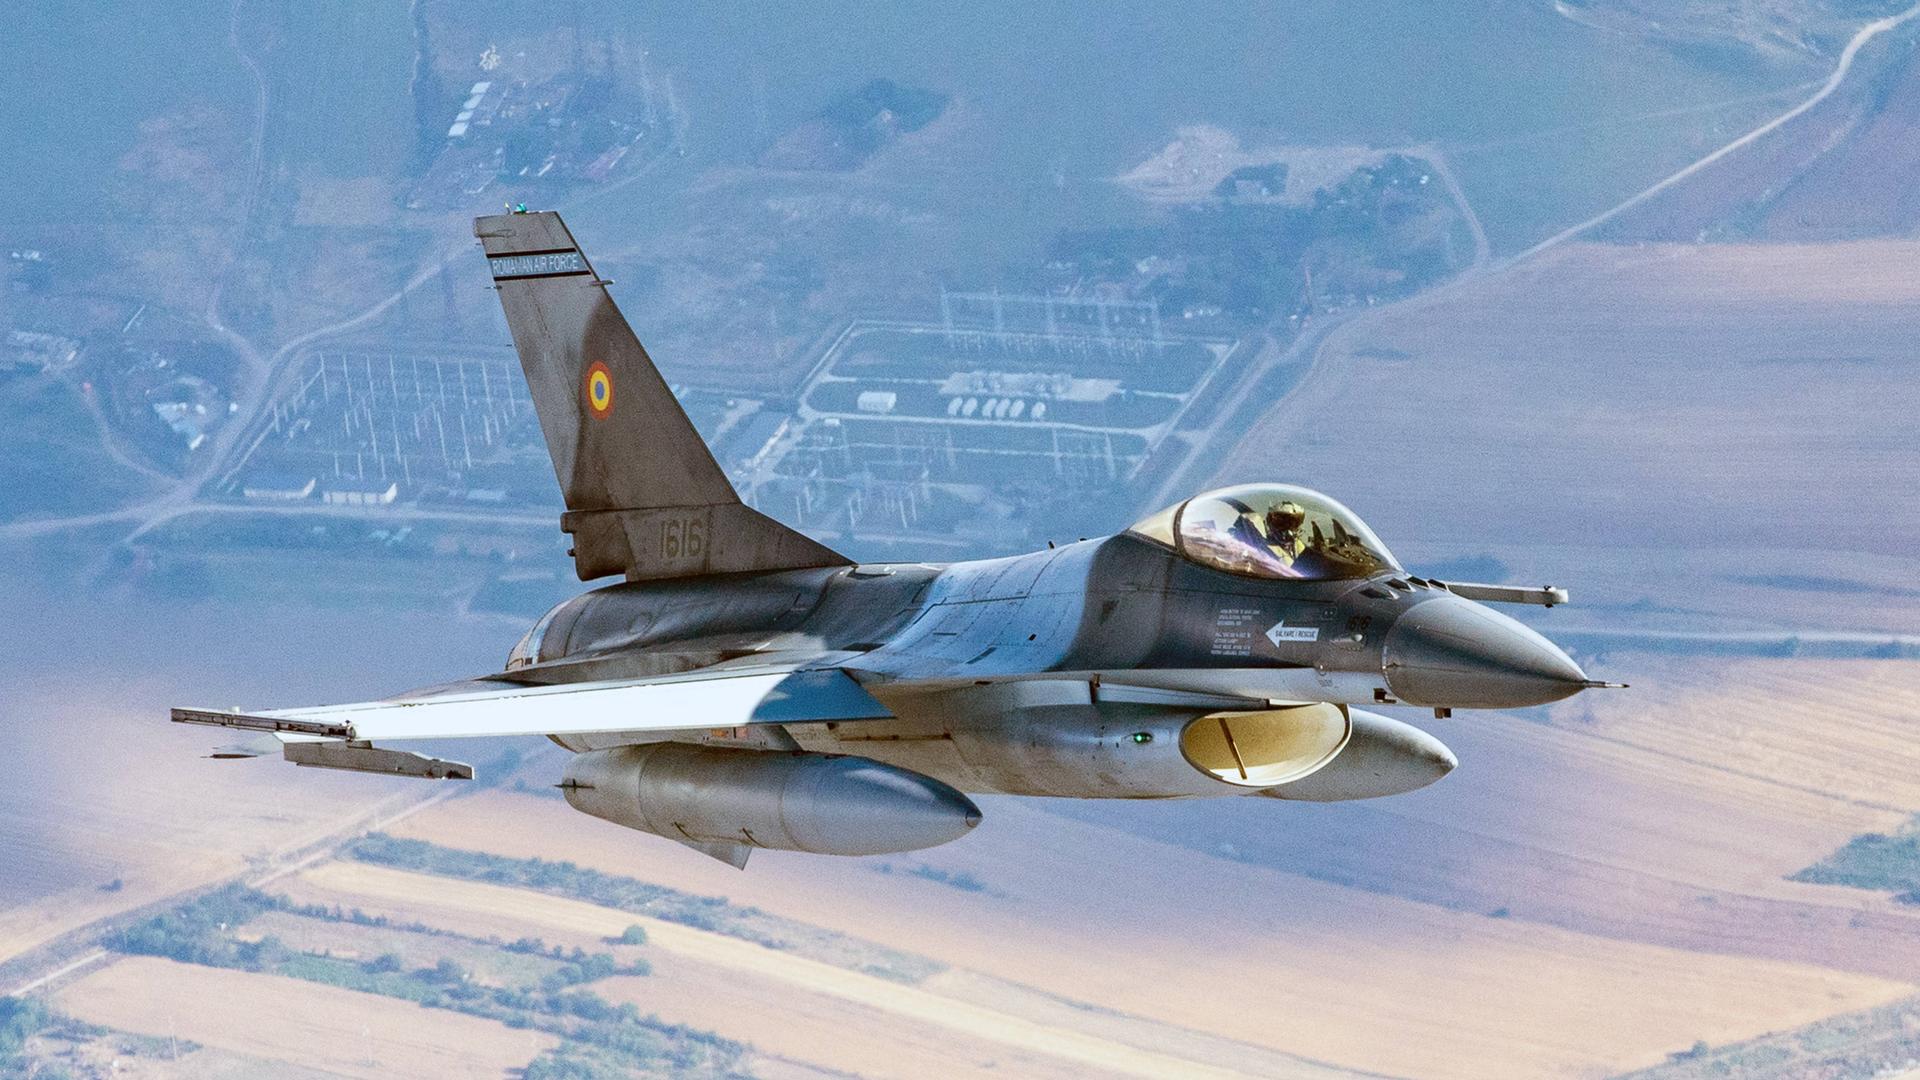 Ein F-16-Kampfjet der rumänischen Luftwaffe patrouilliert an der NATO-Ostflanke. Weit unterhalt des Jets sind Wiesen und Felder zu erkennen. 